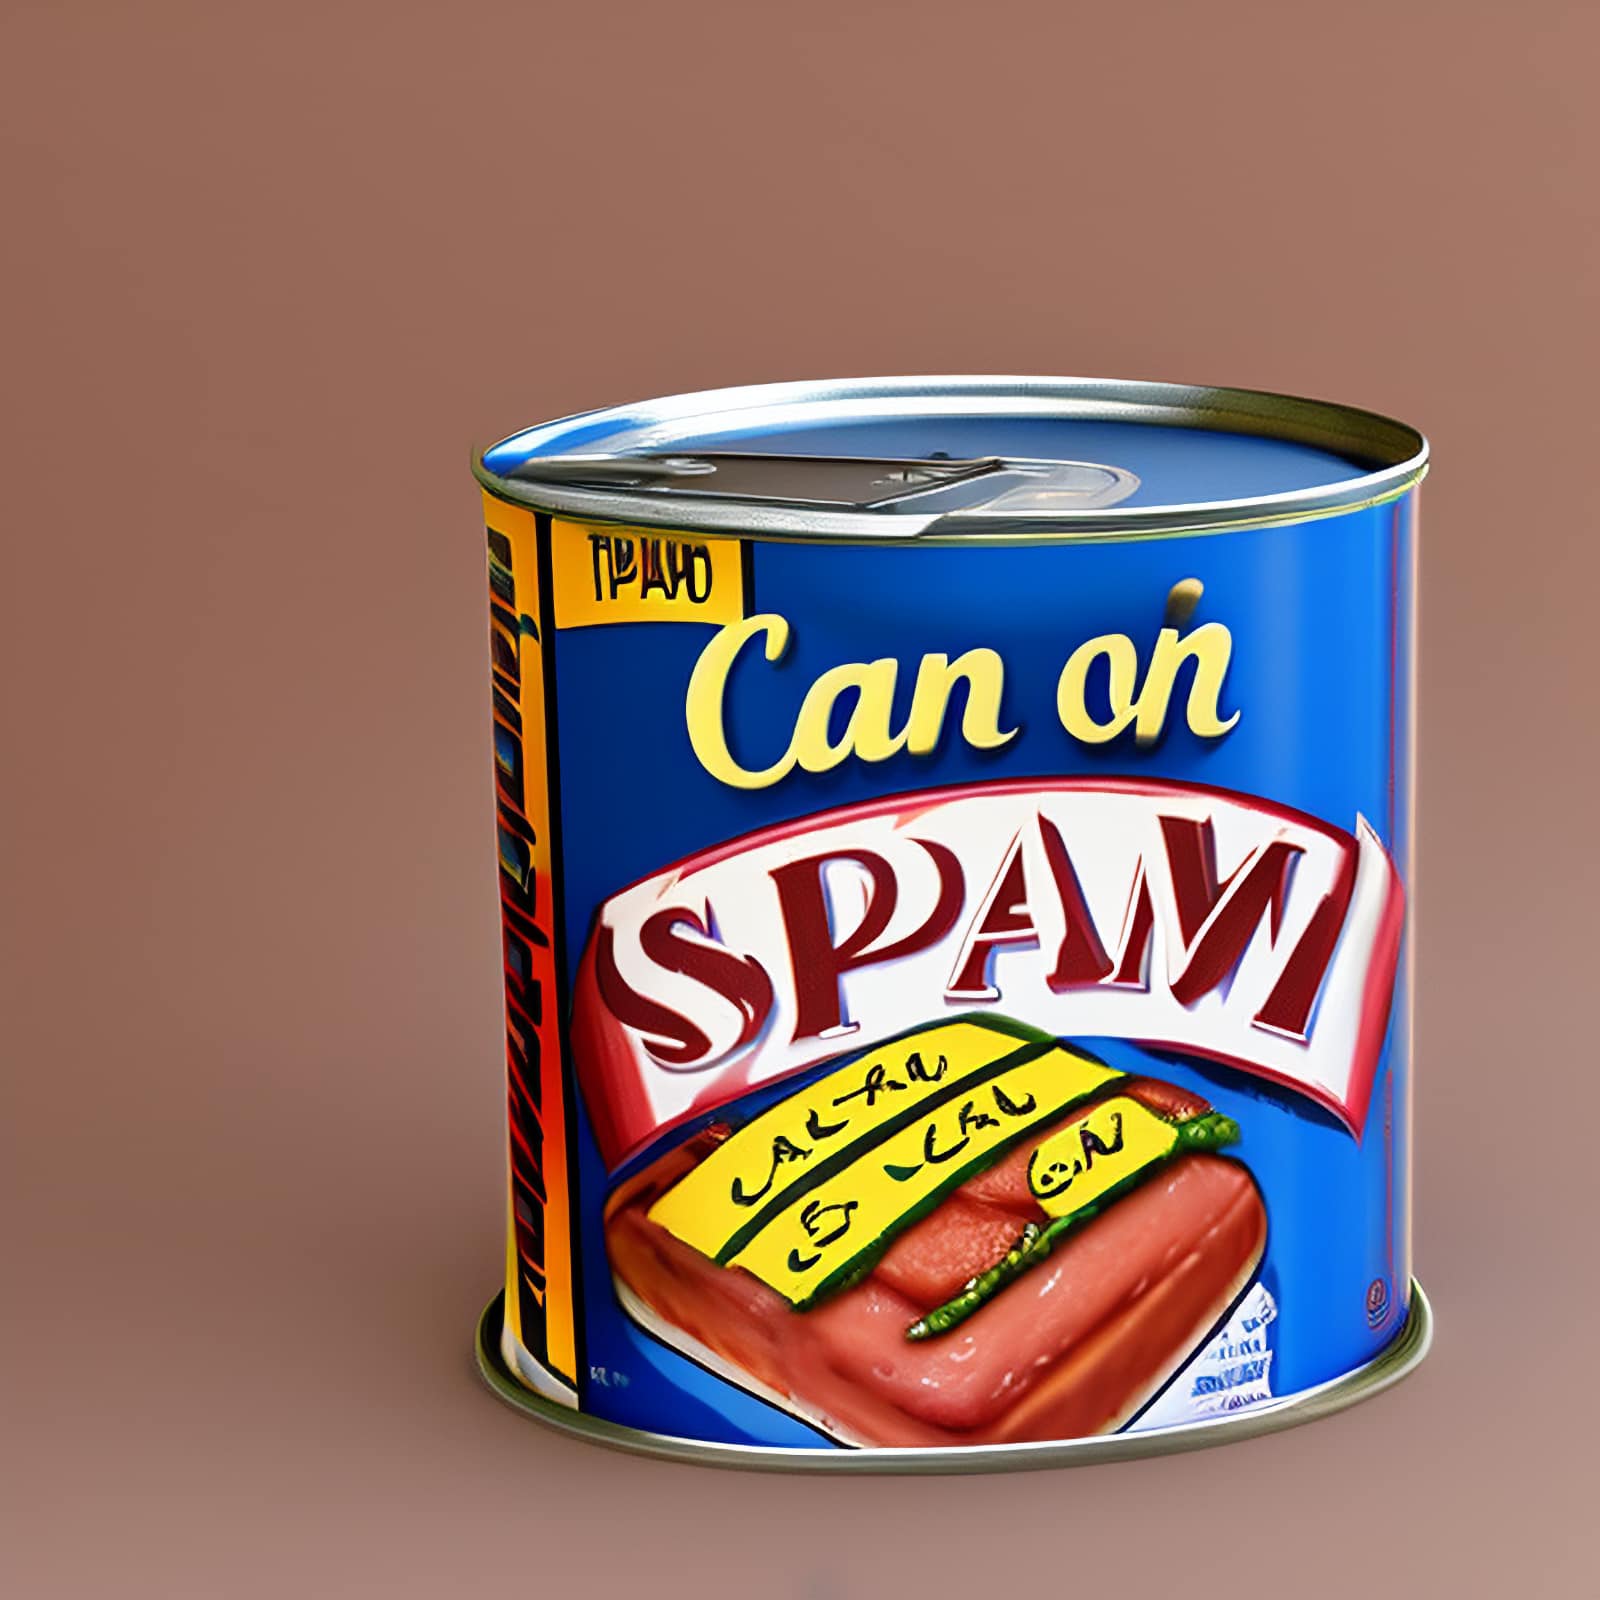 New spam plugin